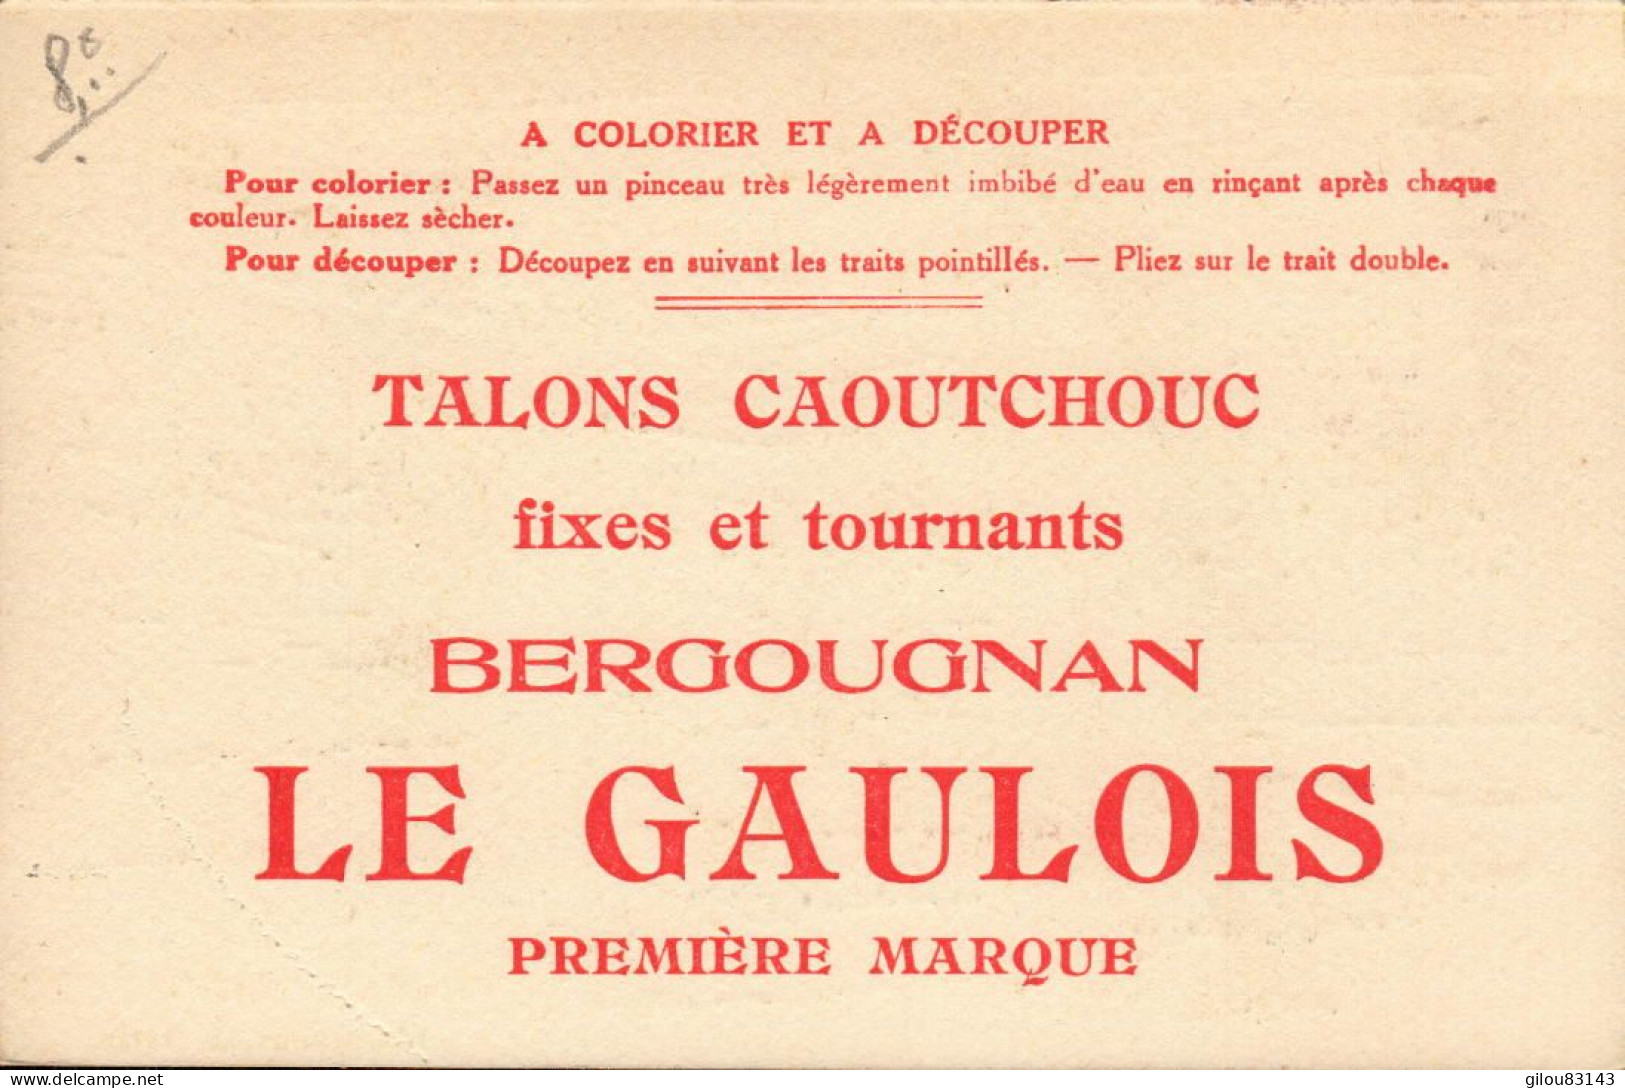 Bergougnan, Le Gaulois, Talons Caoutchouc, Illustration Sport, Golf - Publicité